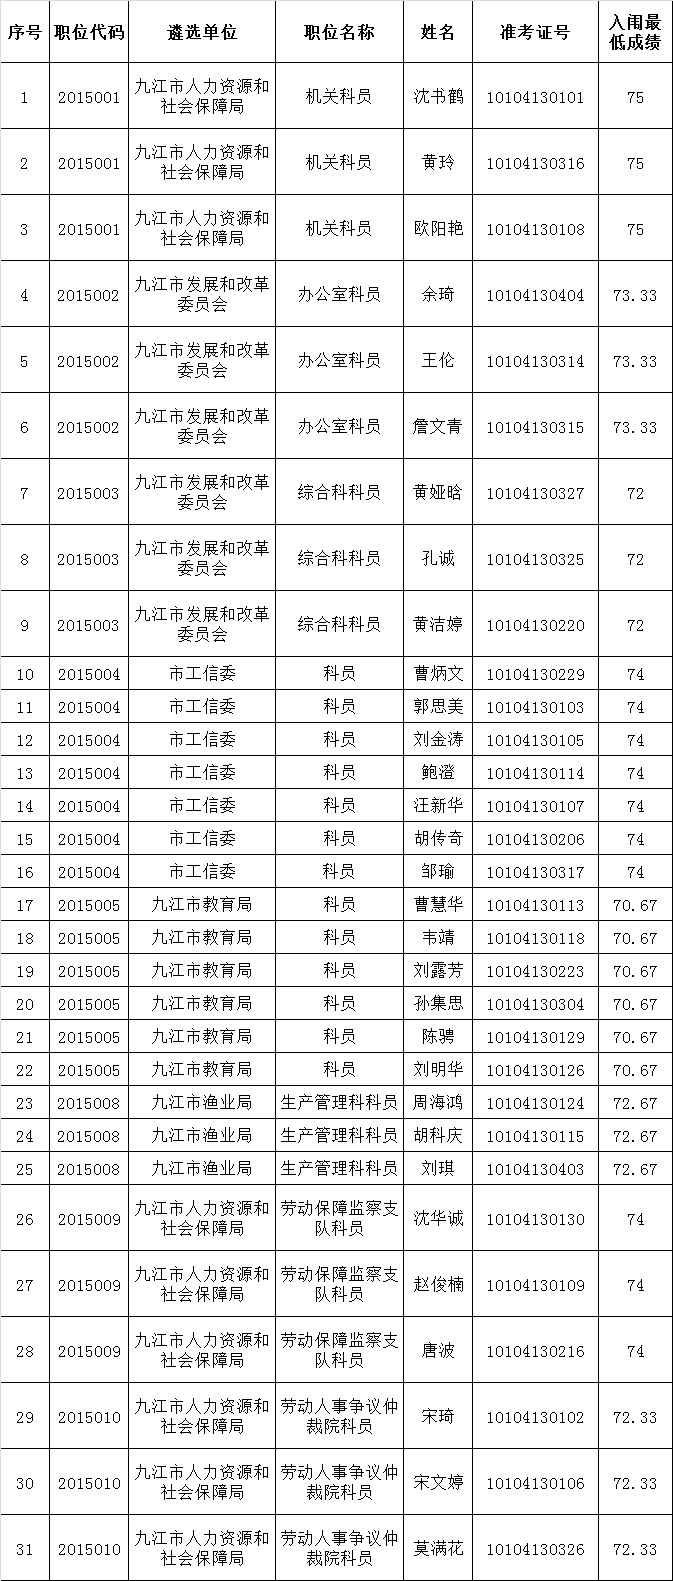 九江市市直行政单位2015年公开遴选公务员入闱面试人员名单.png